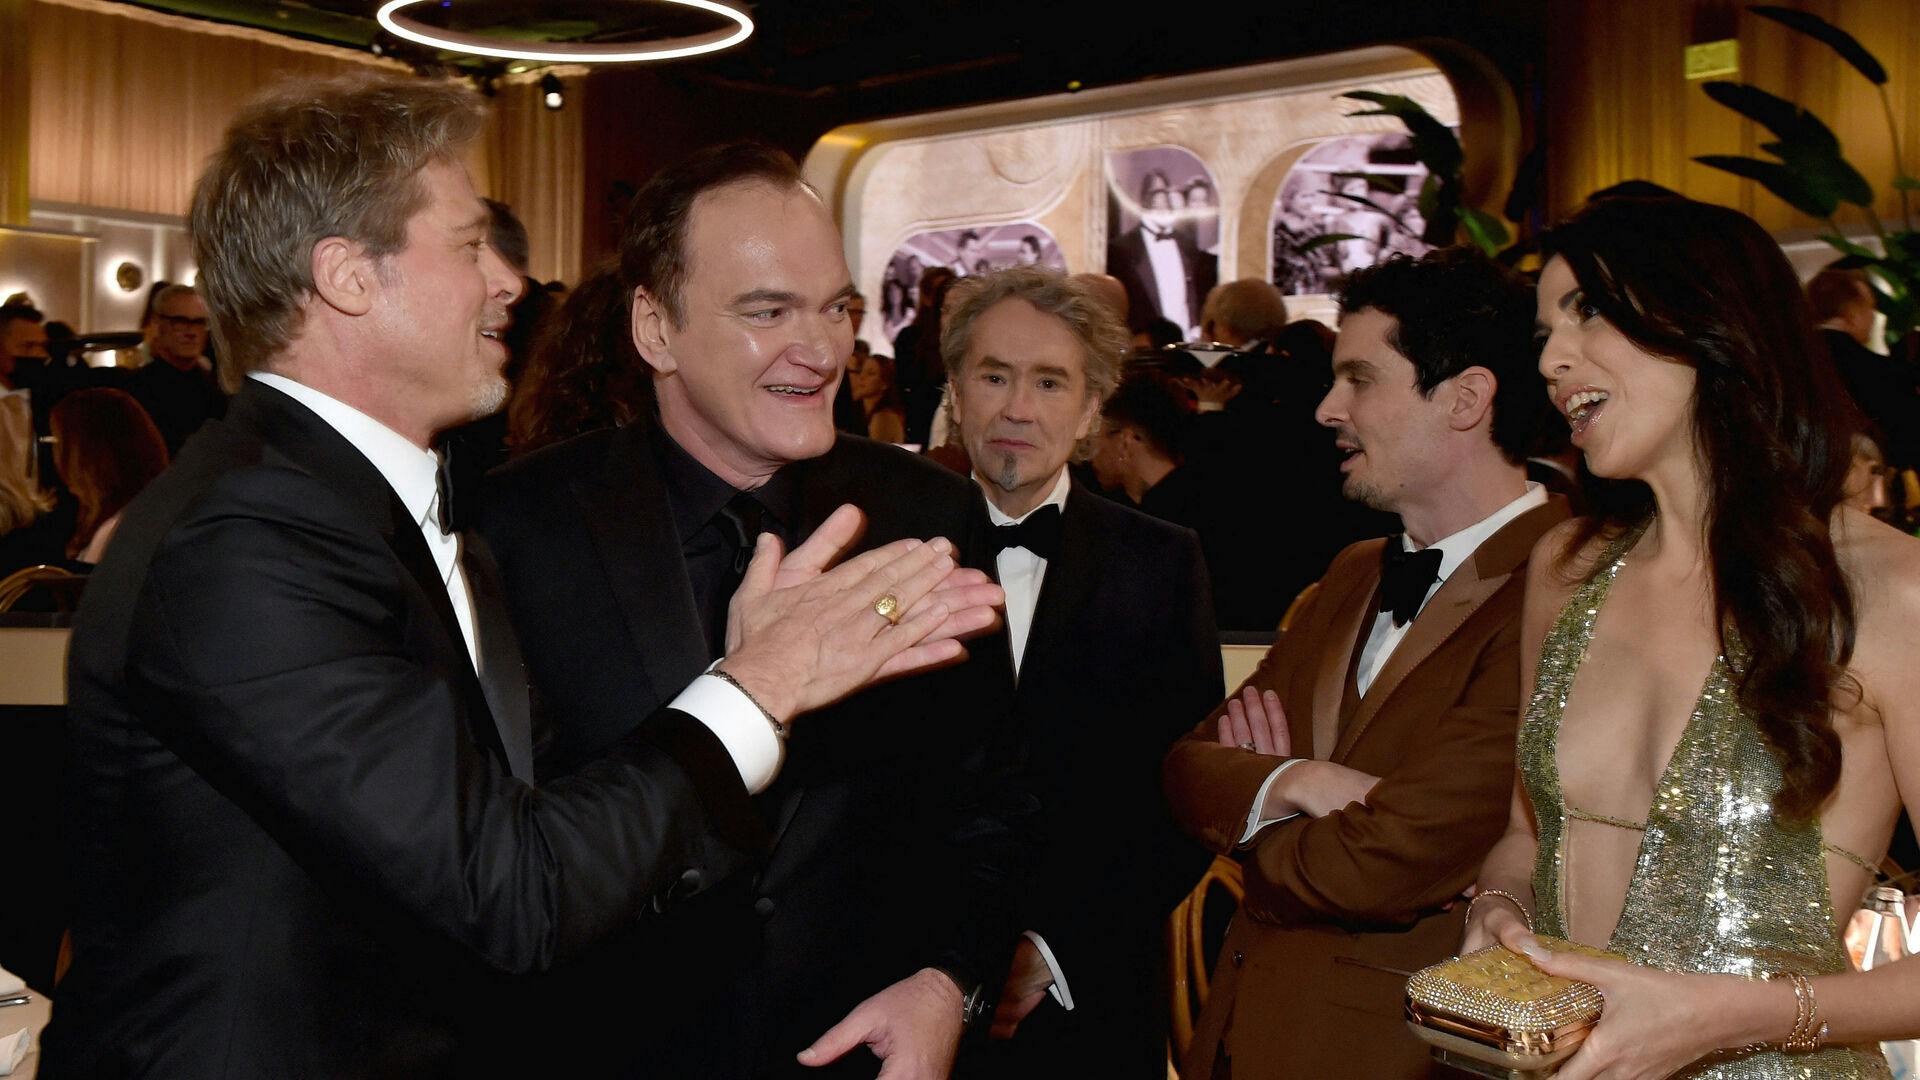 Quentin Tarantino er næsten lige så berømt som sine skuespillere. Her ses han sammen med vennen Brad Pitt og Daniella Pick.